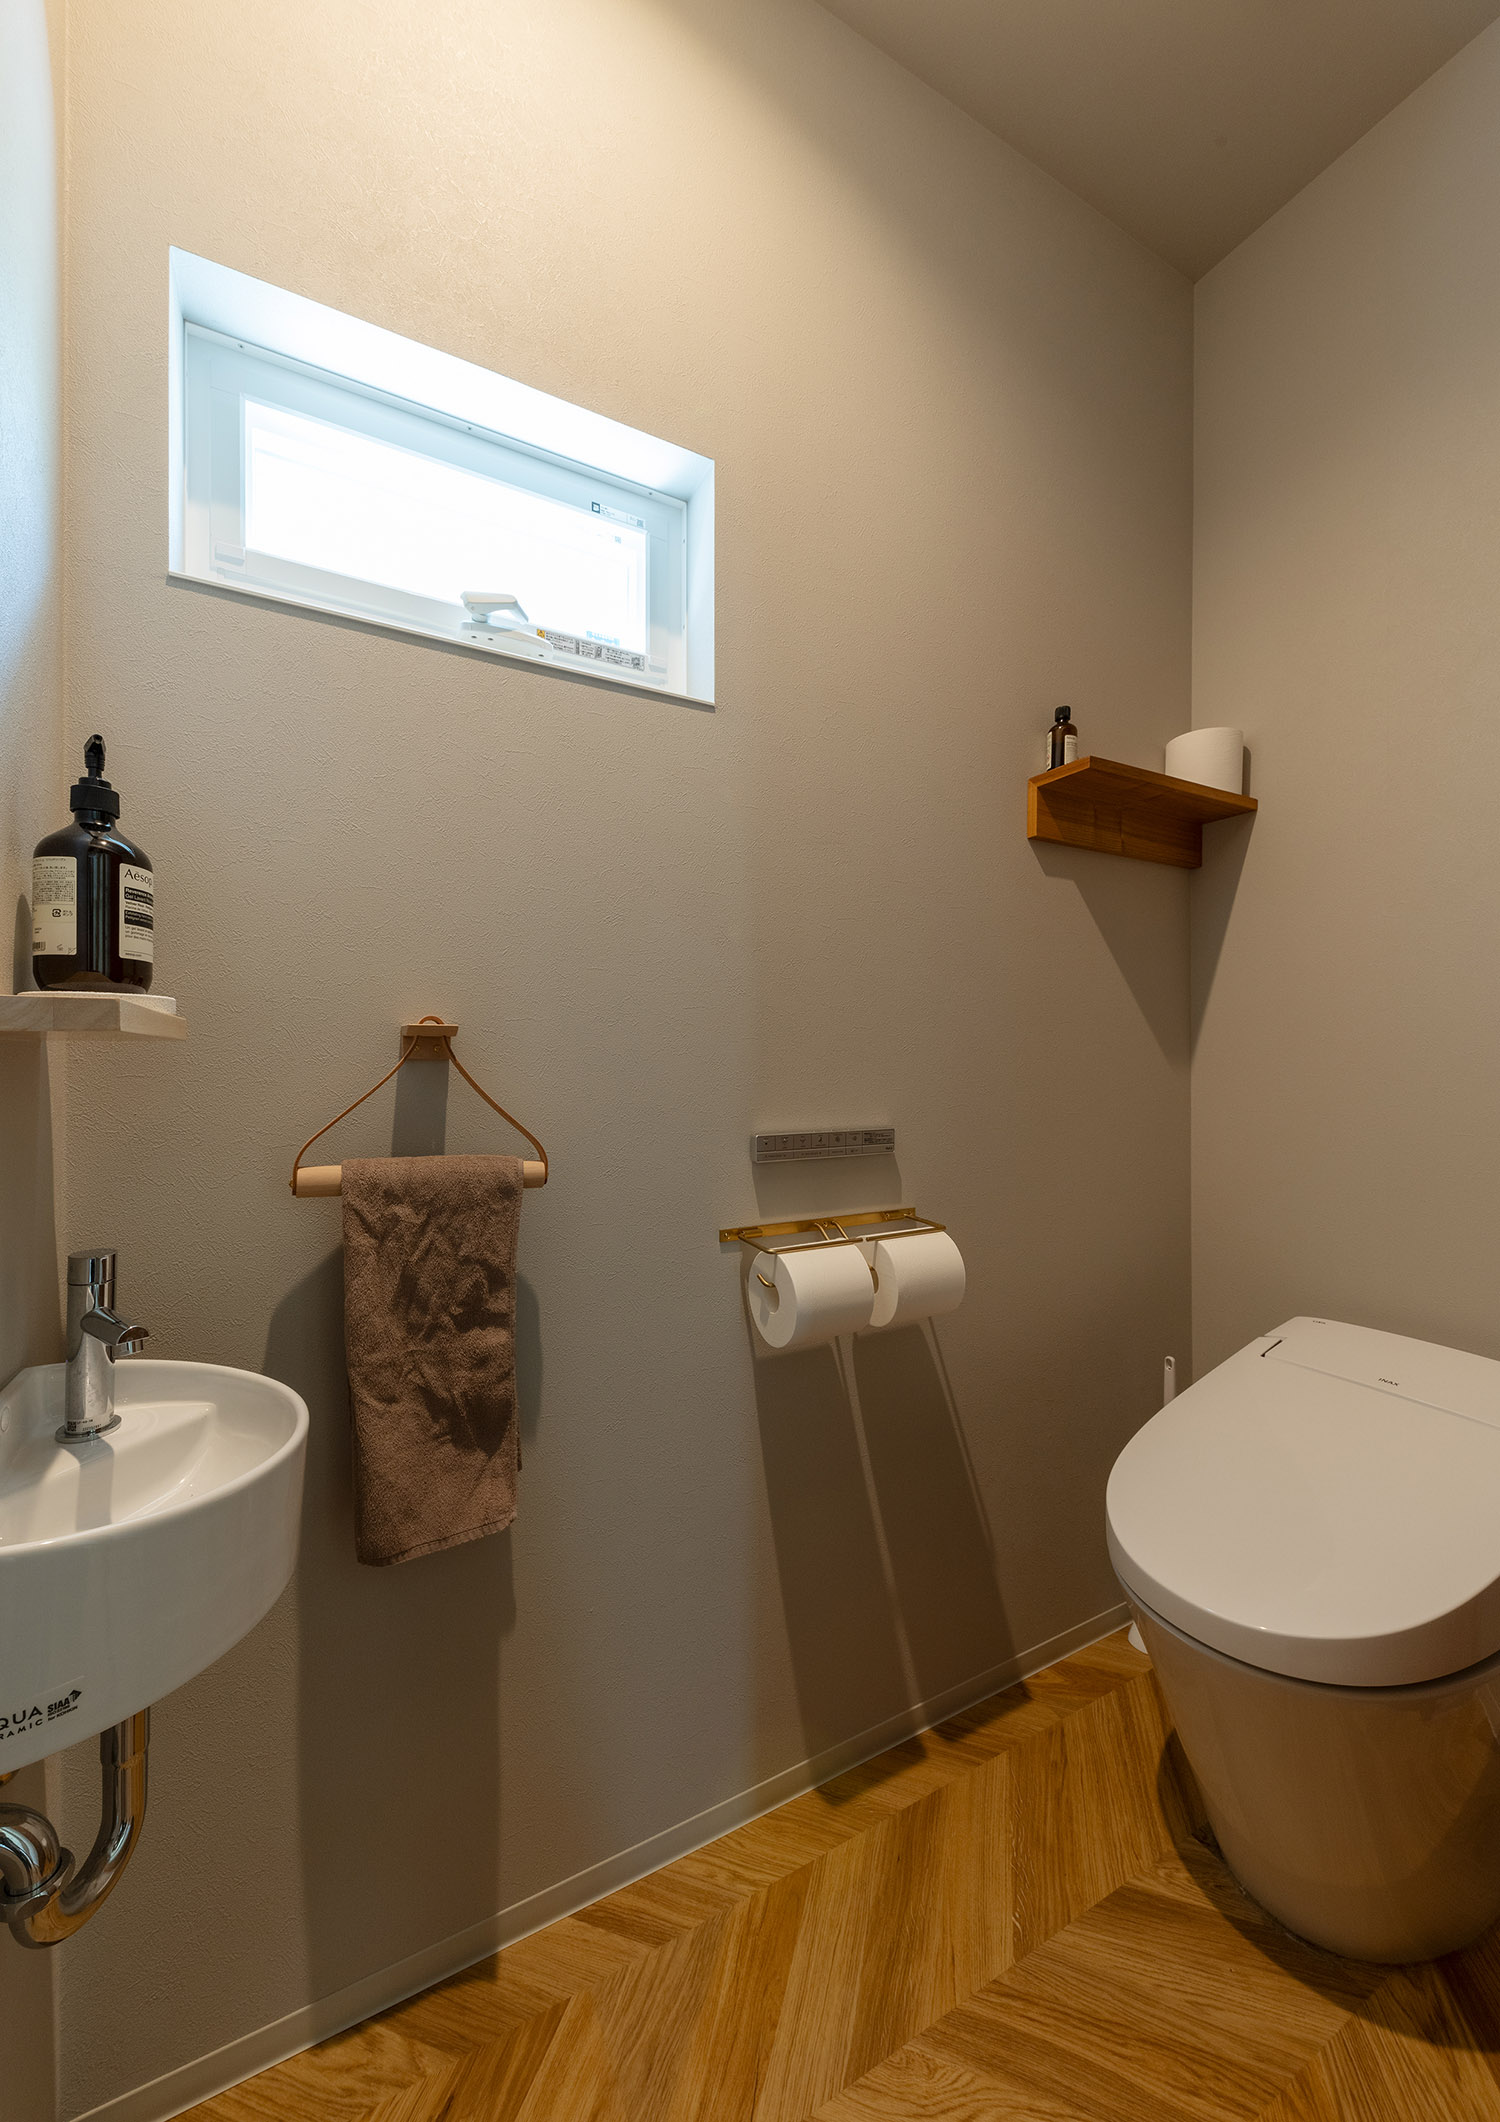 丸い薄型手洗いを取り付けたヘリンボーン床のトイレ・デザイン住宅